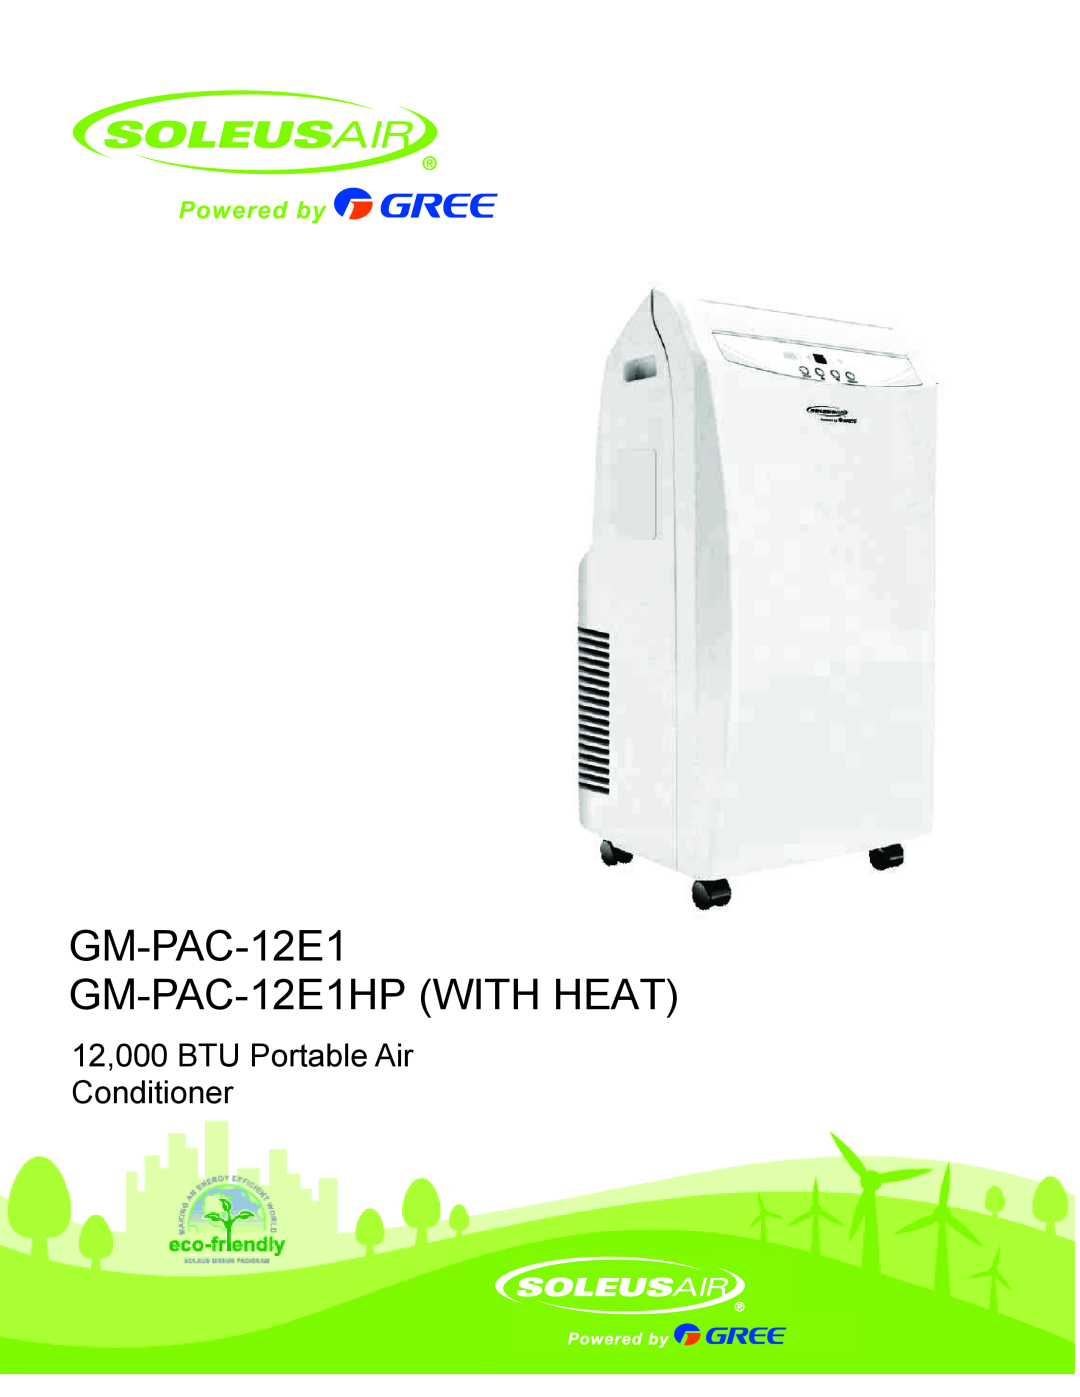 Soleus Air manual GM-PAC-12E1 GM-PAC-12E1HPWITH HEAT, 12,000 BTU Portable Air Conditioner, Operating Instructions 